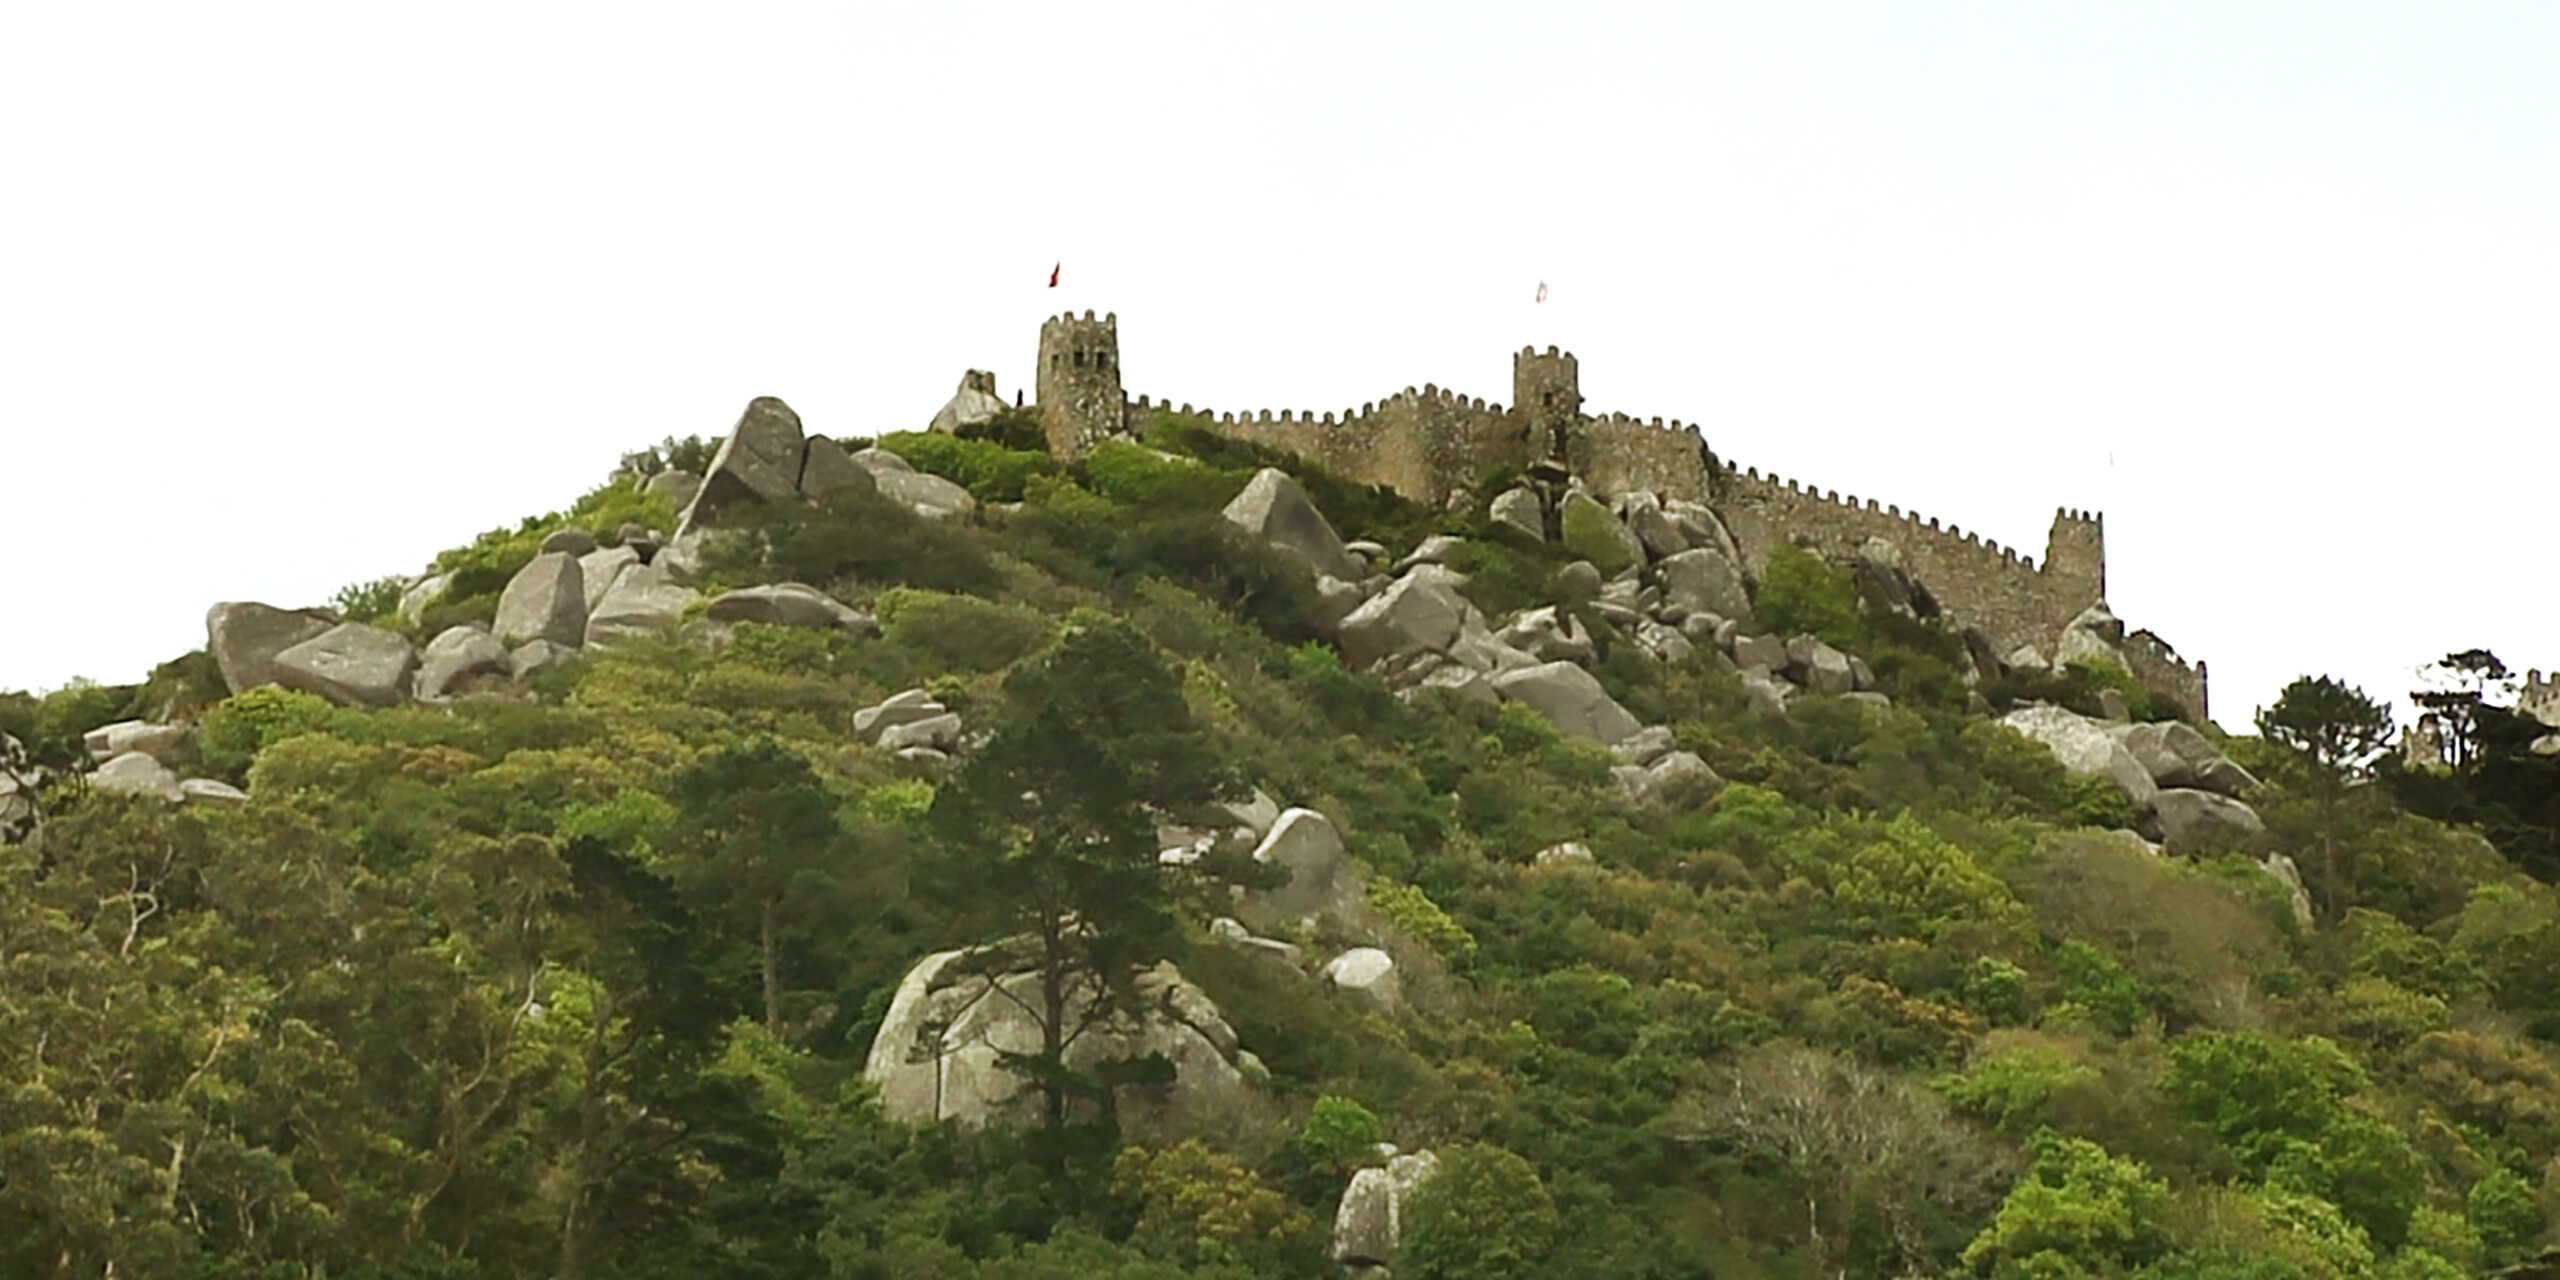 O Castelo dos Mouros fica na parte mais alta da colina de Sintra